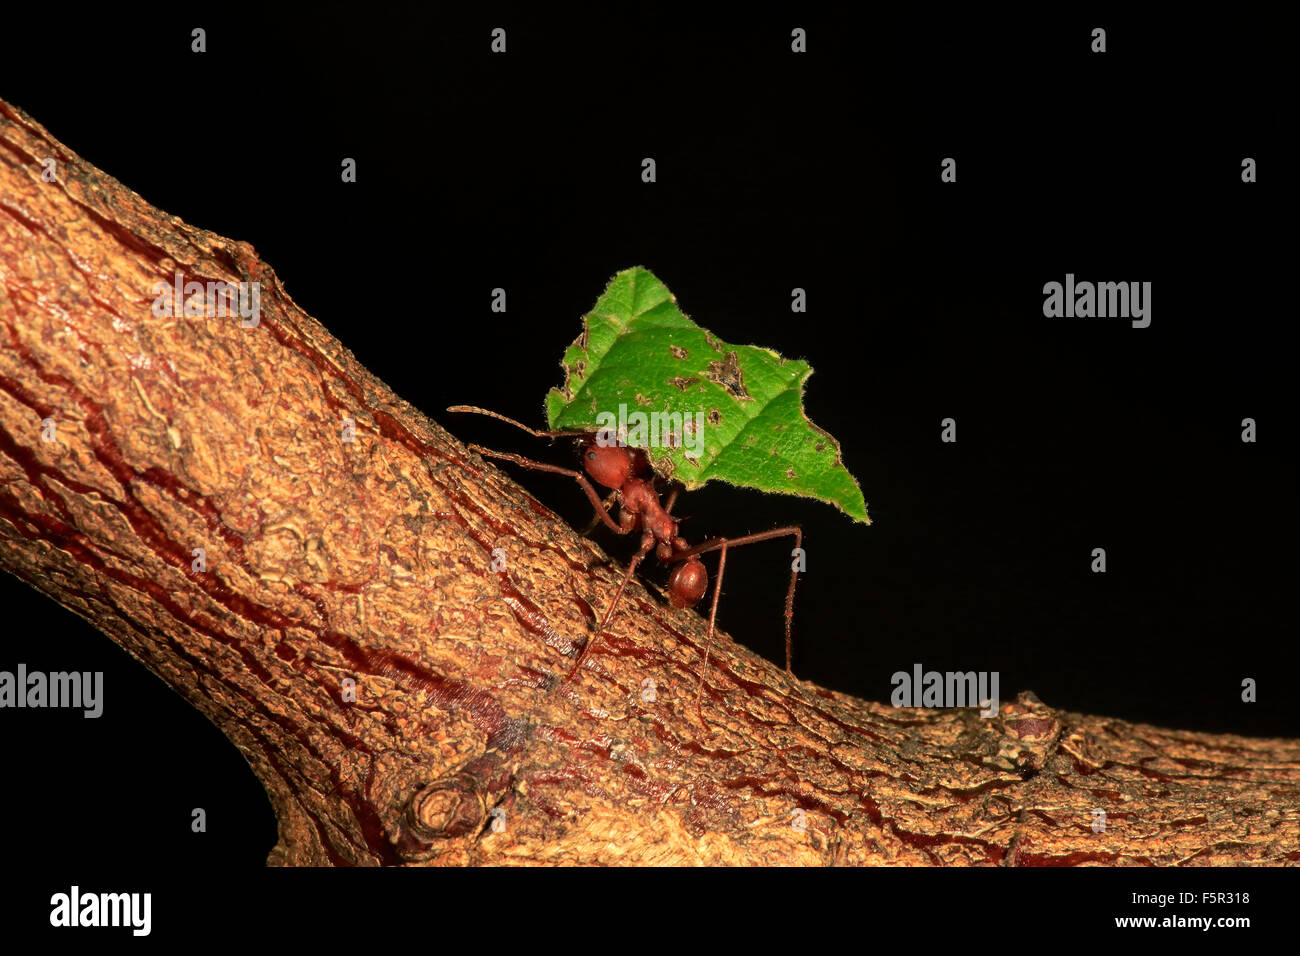 Atta sexdens Leafcutter (ANT) transportando hoja cortada, que se encuentra en América Central y América del Sur, cautiva Foto de stock